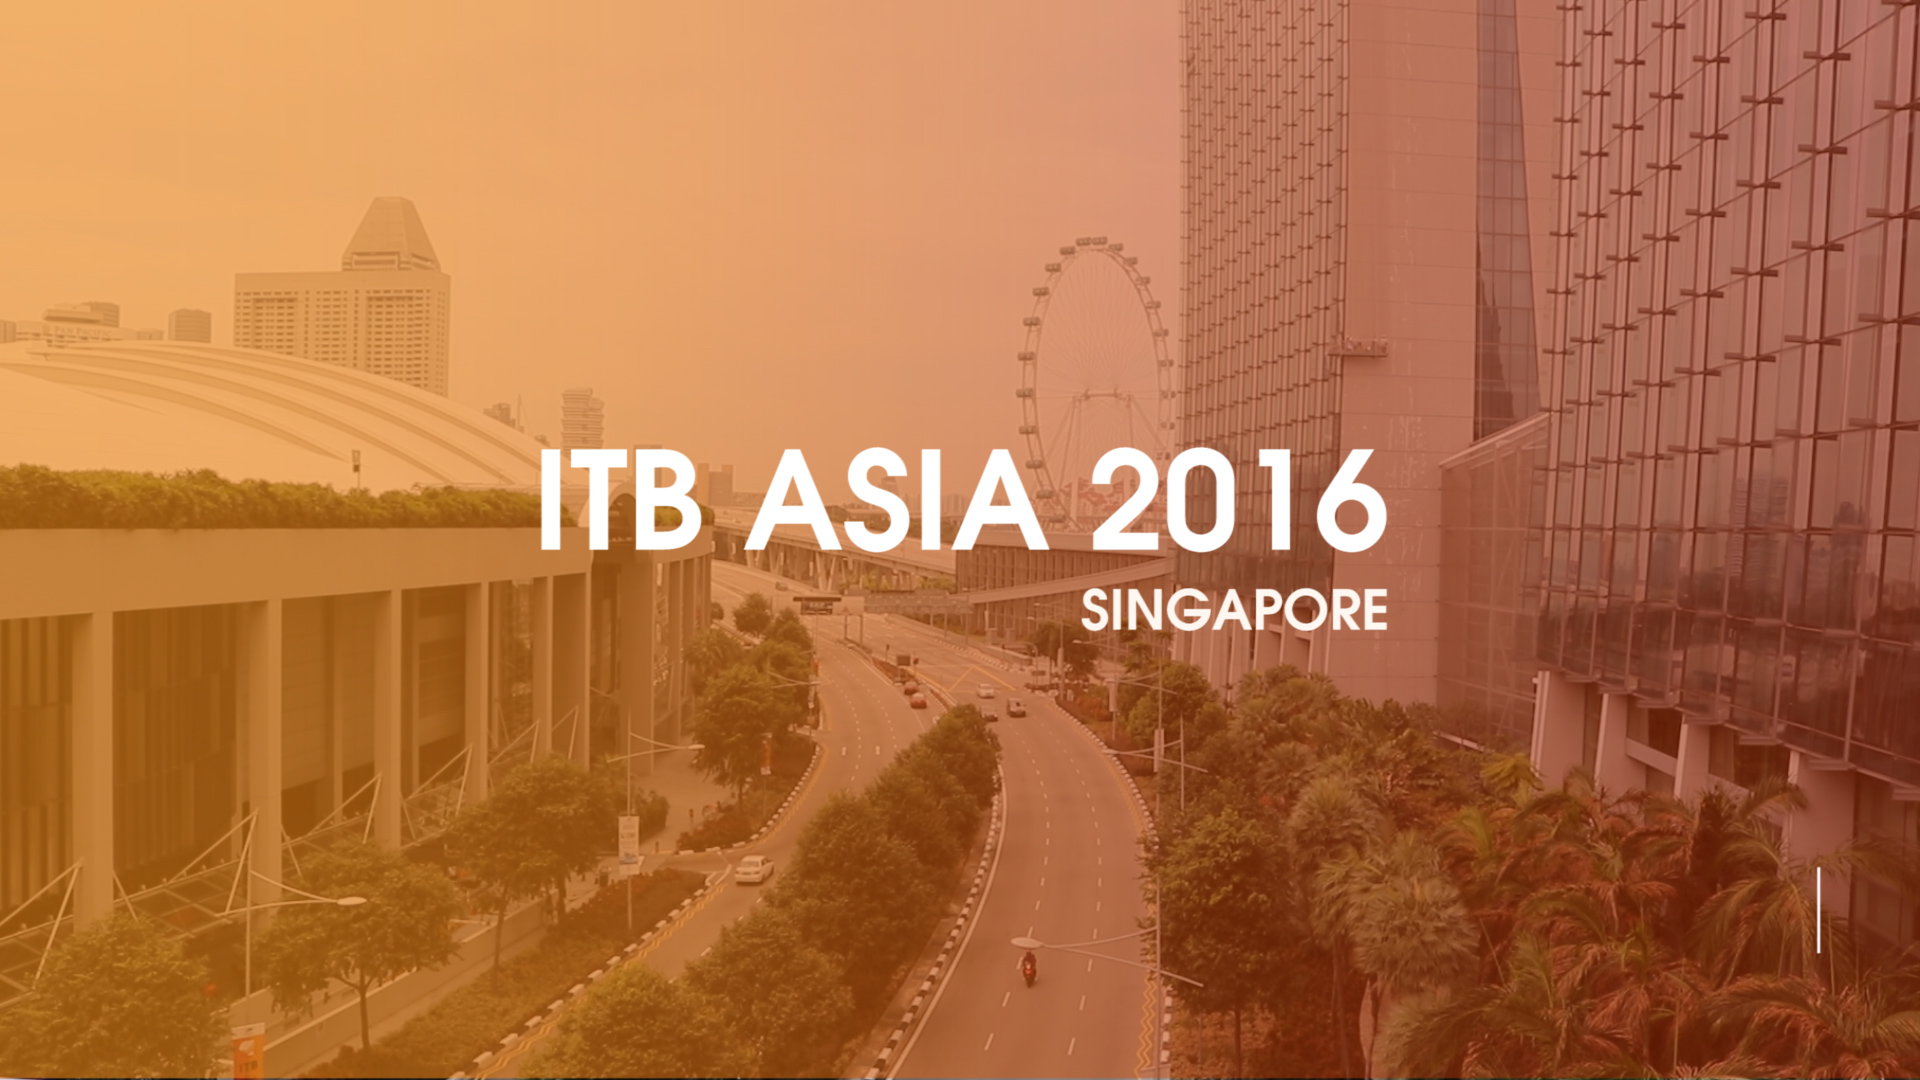 ITB ASIA 2016 in Singapore